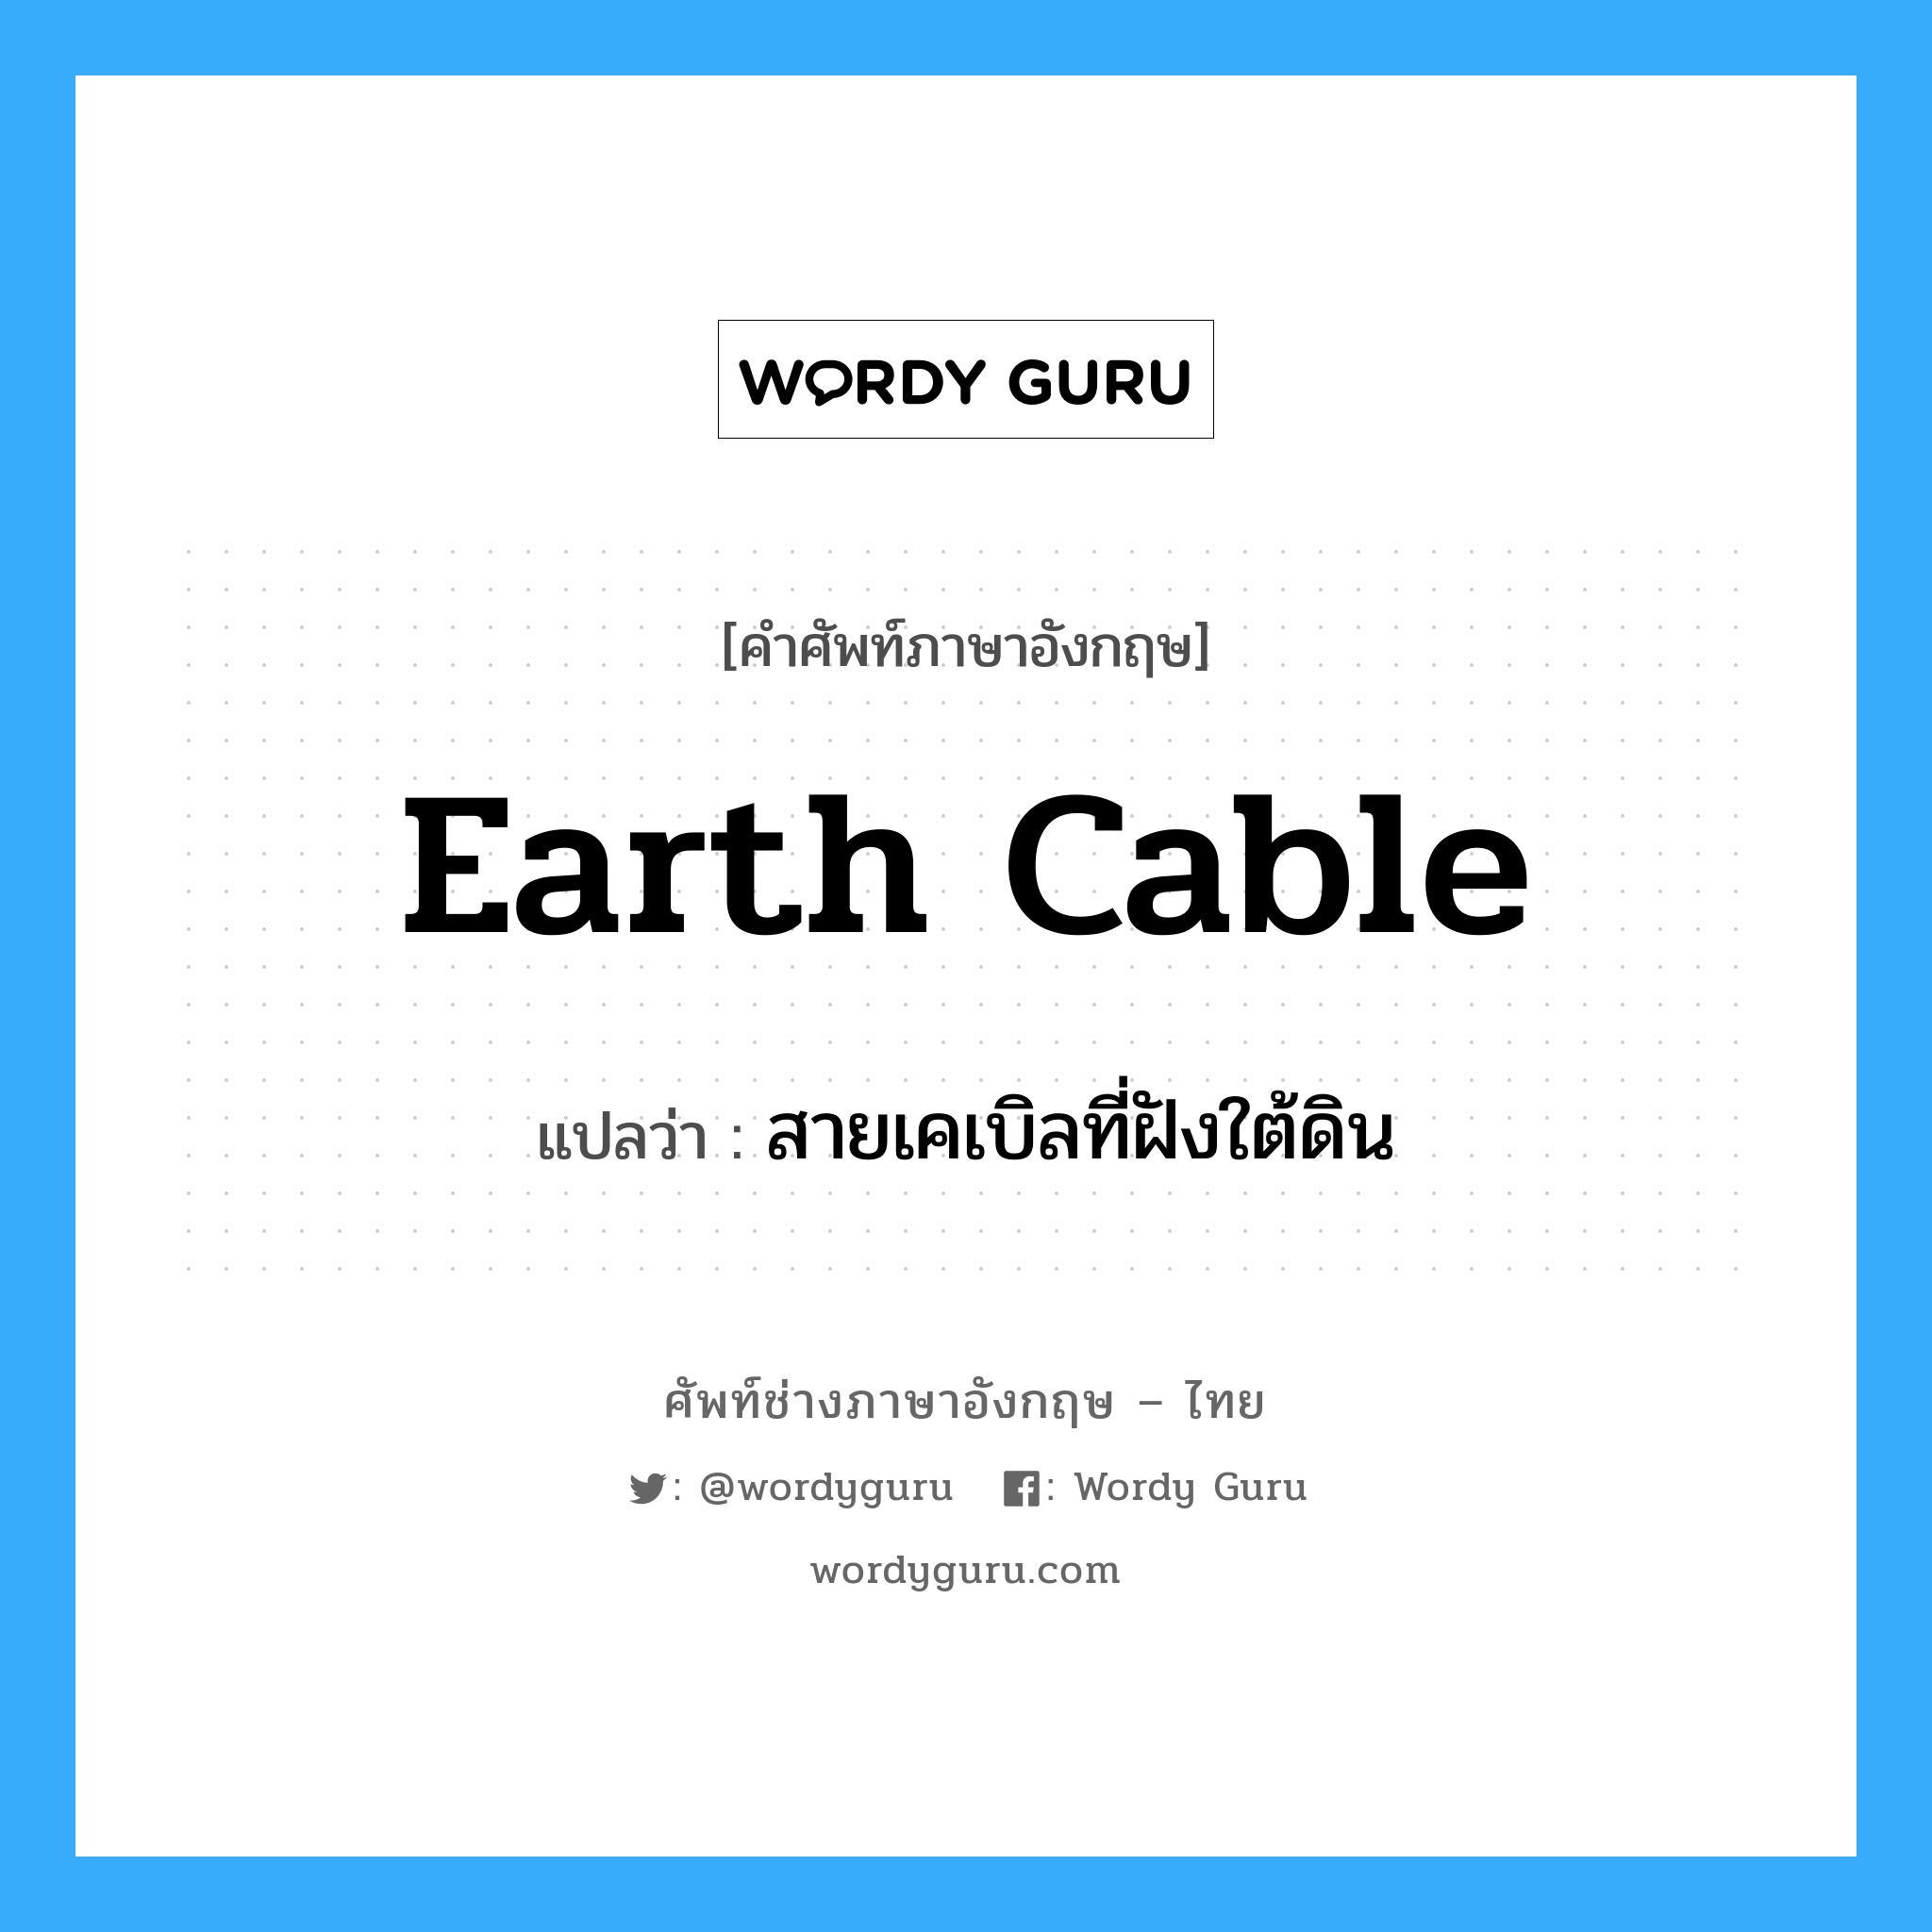 earth cable แปลว่า?, คำศัพท์ช่างภาษาอังกฤษ - ไทย earth cable คำศัพท์ภาษาอังกฤษ earth cable แปลว่า สายเคเบิลที่ฝังใต้ดิน